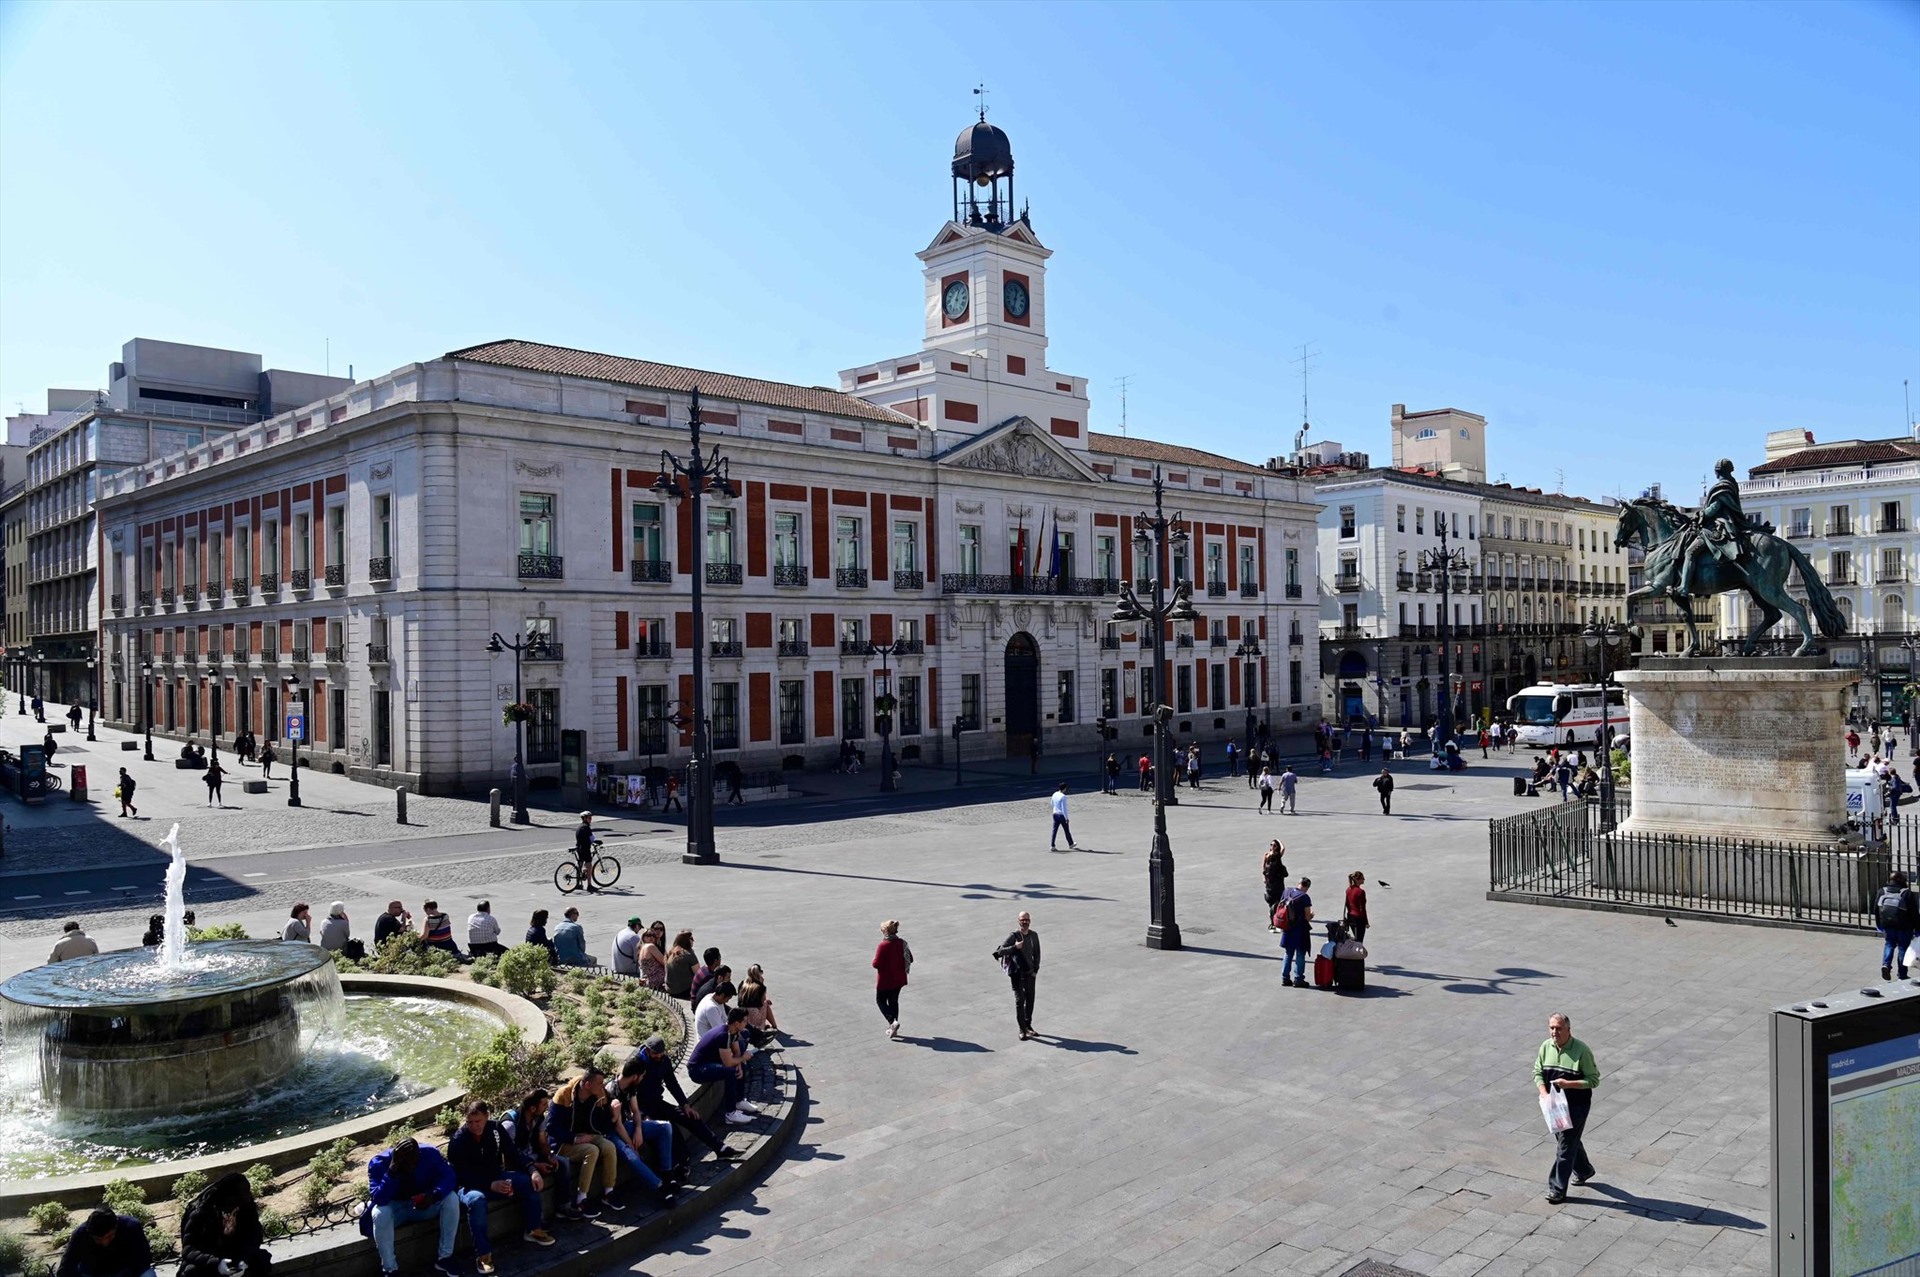 Quảng trường trung tâm Puerta del Sol (Madrid, Tây Ban Nha) vắng khách 14.3. Ảnh: Getty Images.